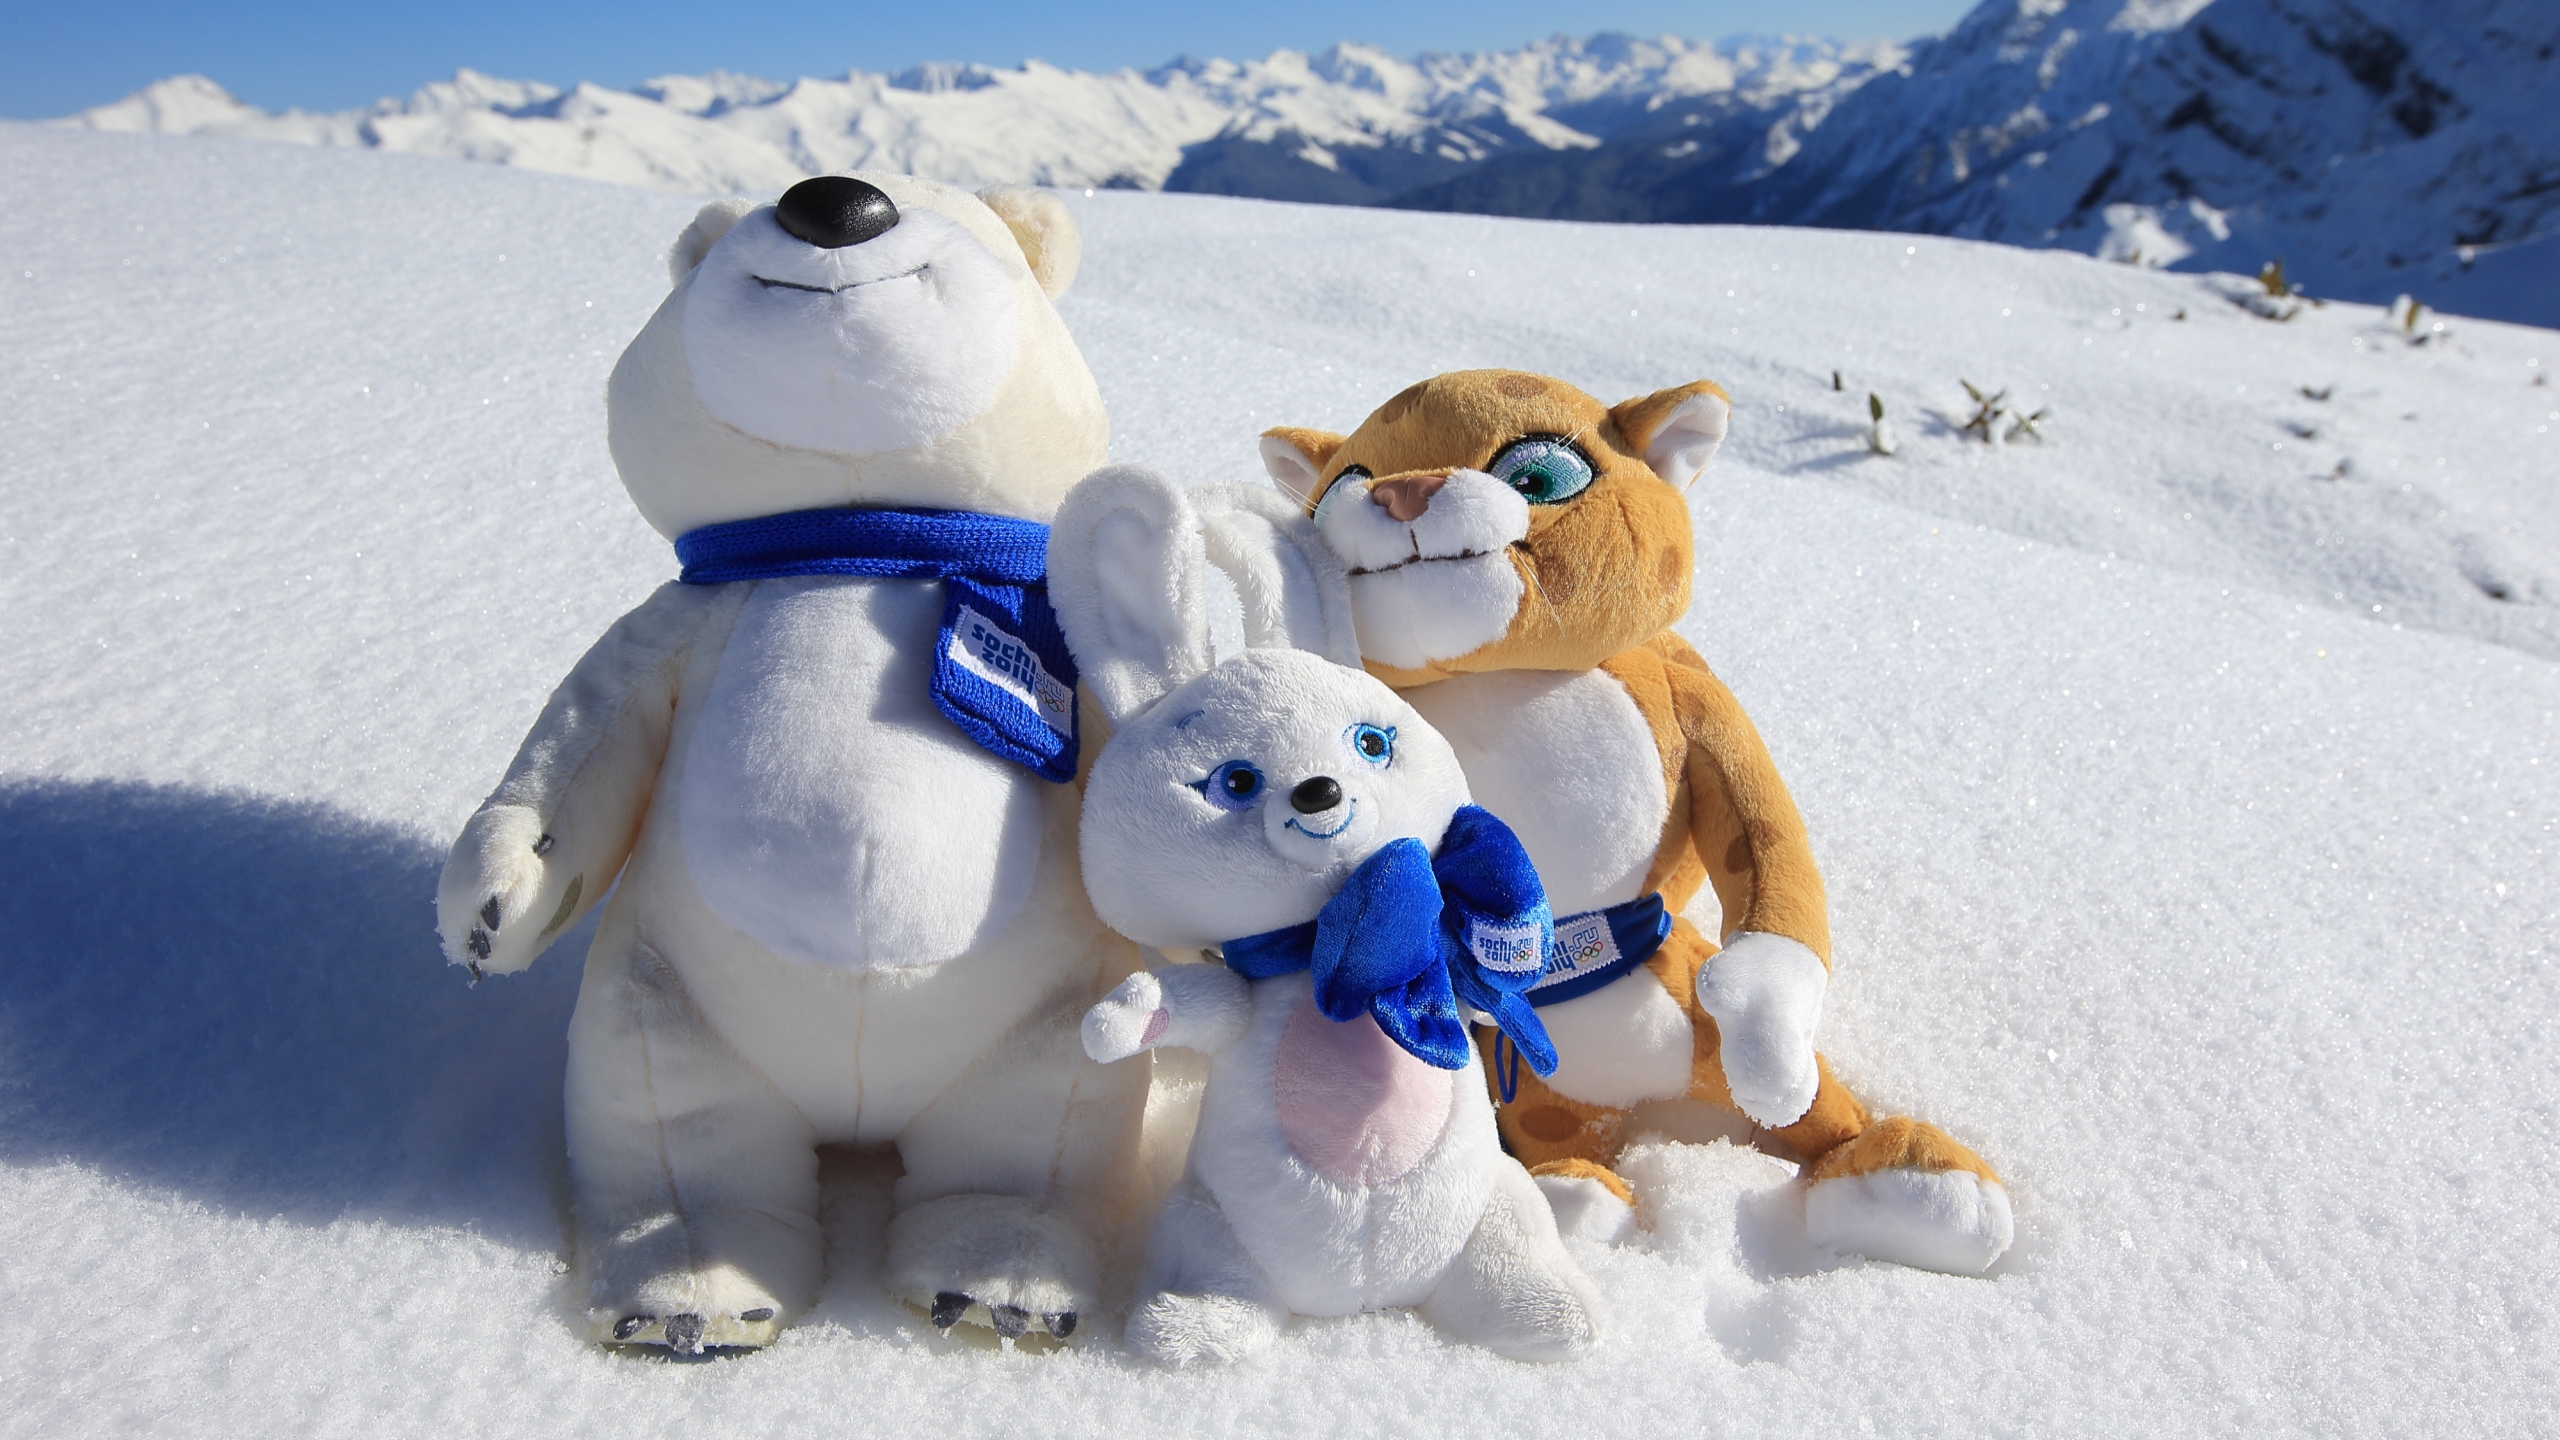 Sochi 2014 Olympic Mascots